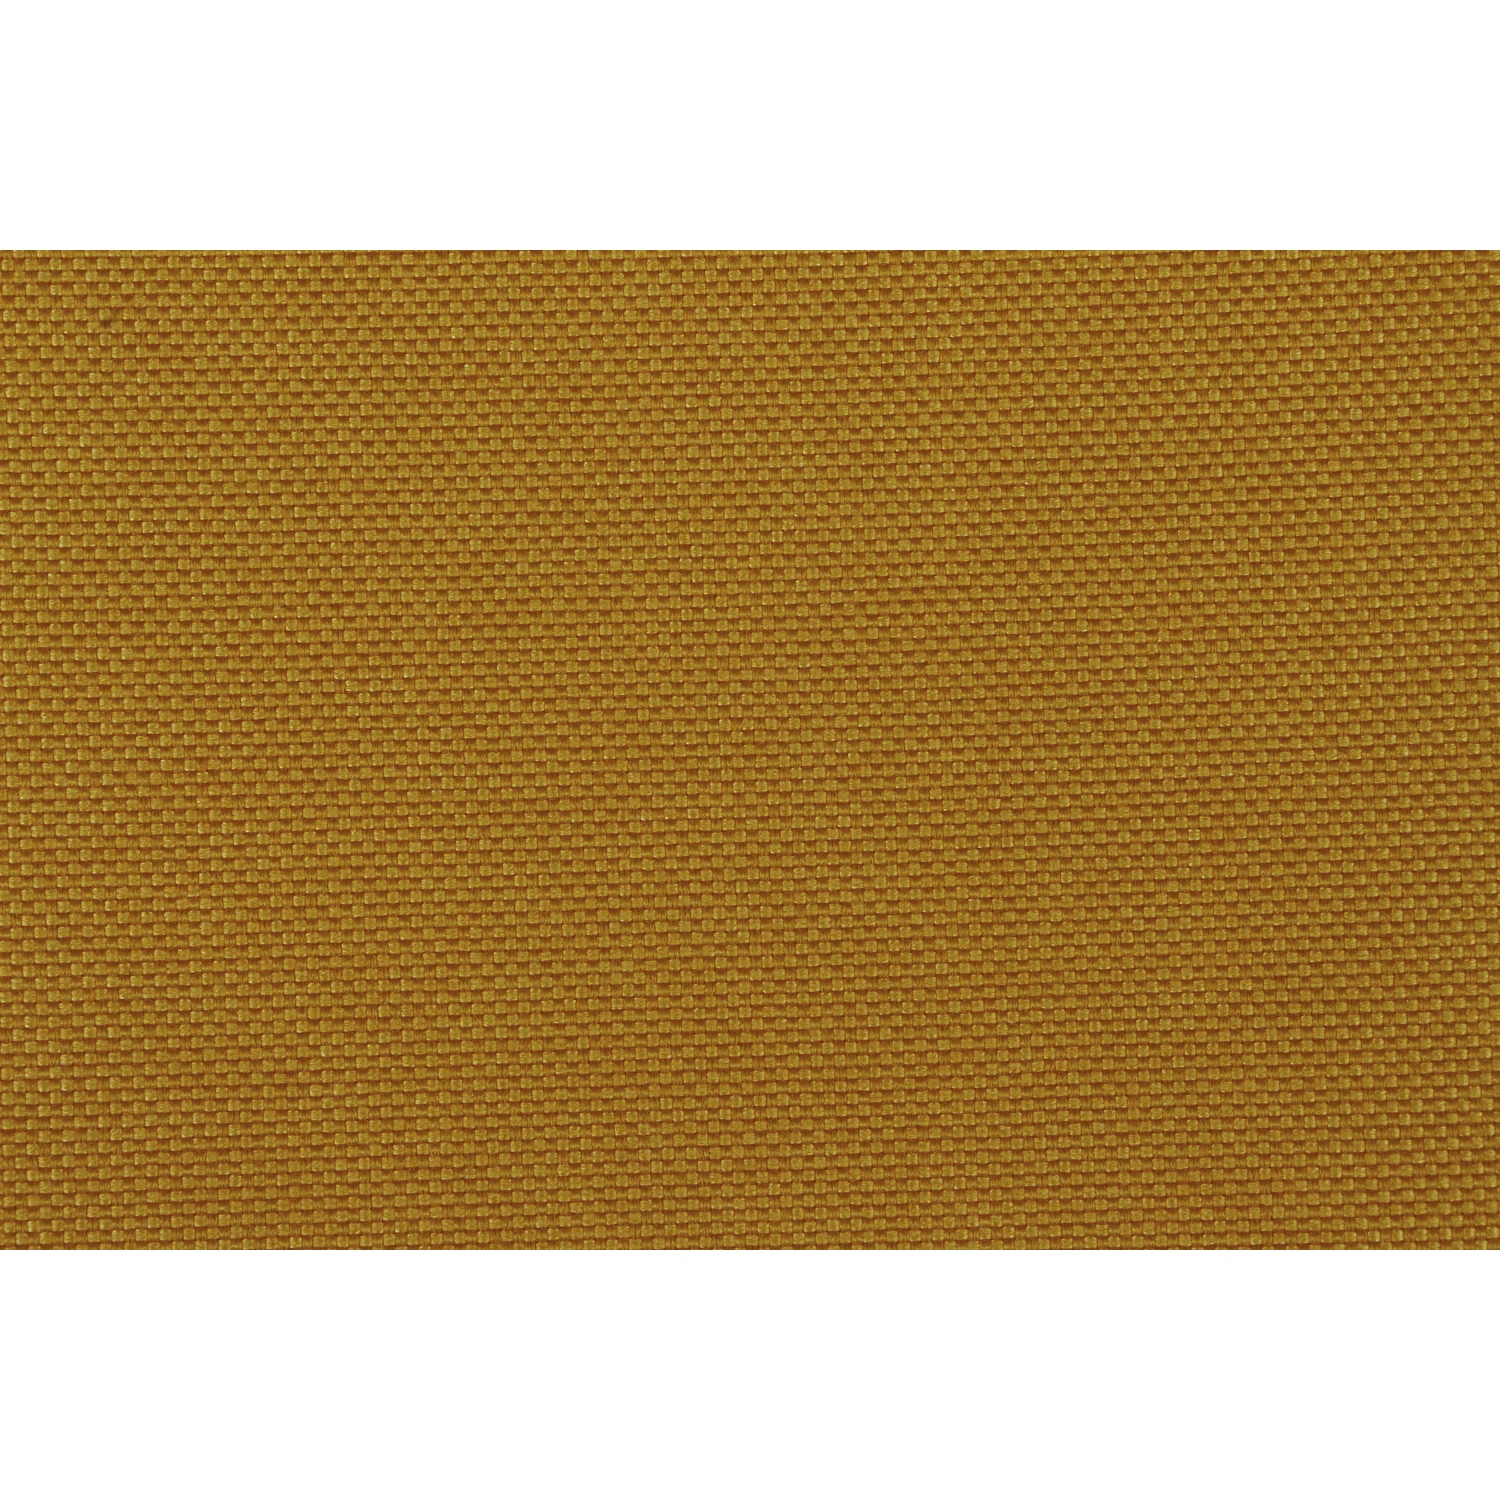 SIENA GARDEN Sitzauflage »Musica«, gelb, unifarben, BxL: 46 x 96 cm